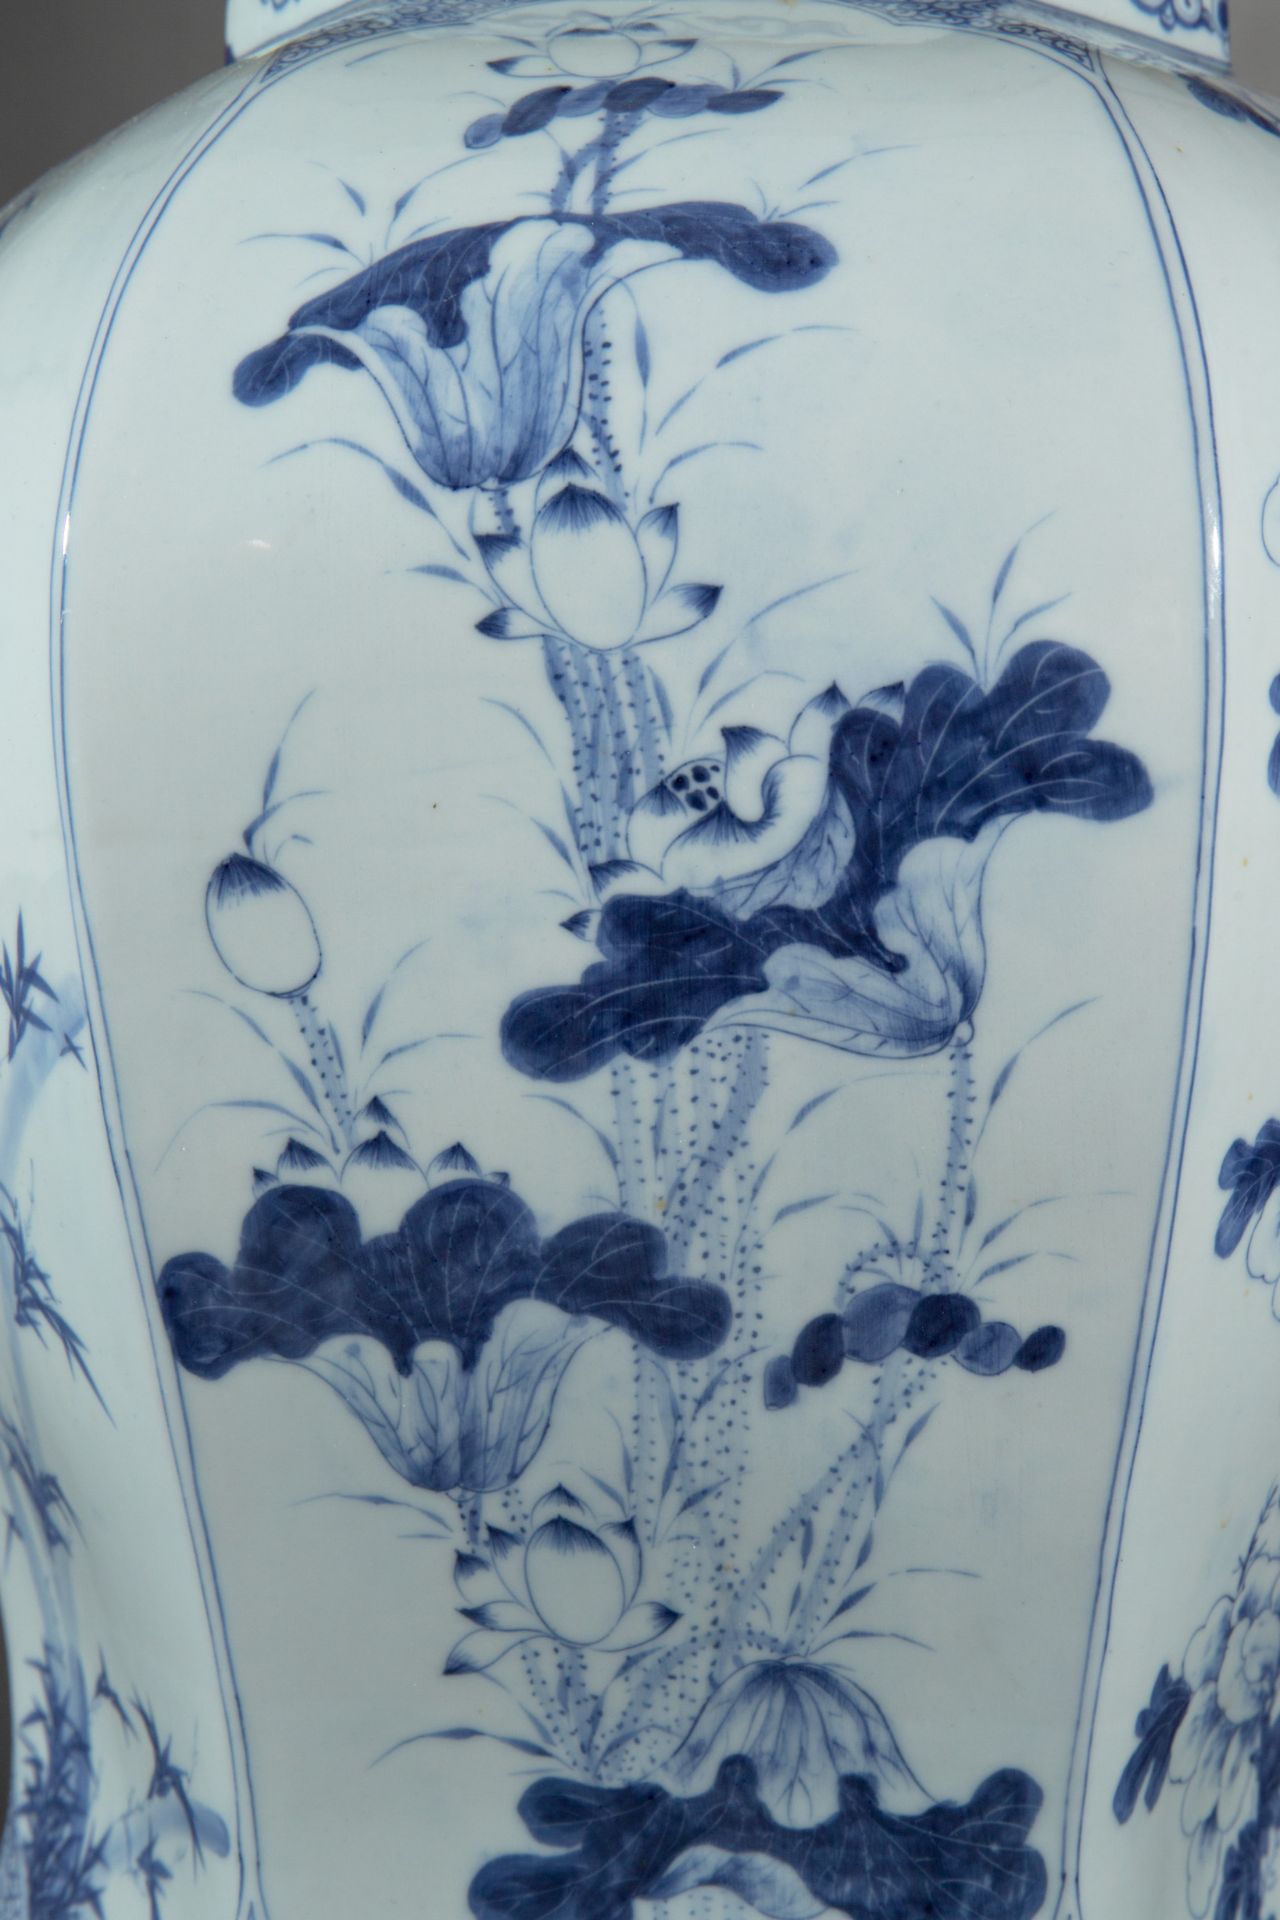 Large lidded vase, probably Korea, China, Japan - Image 7 of 11